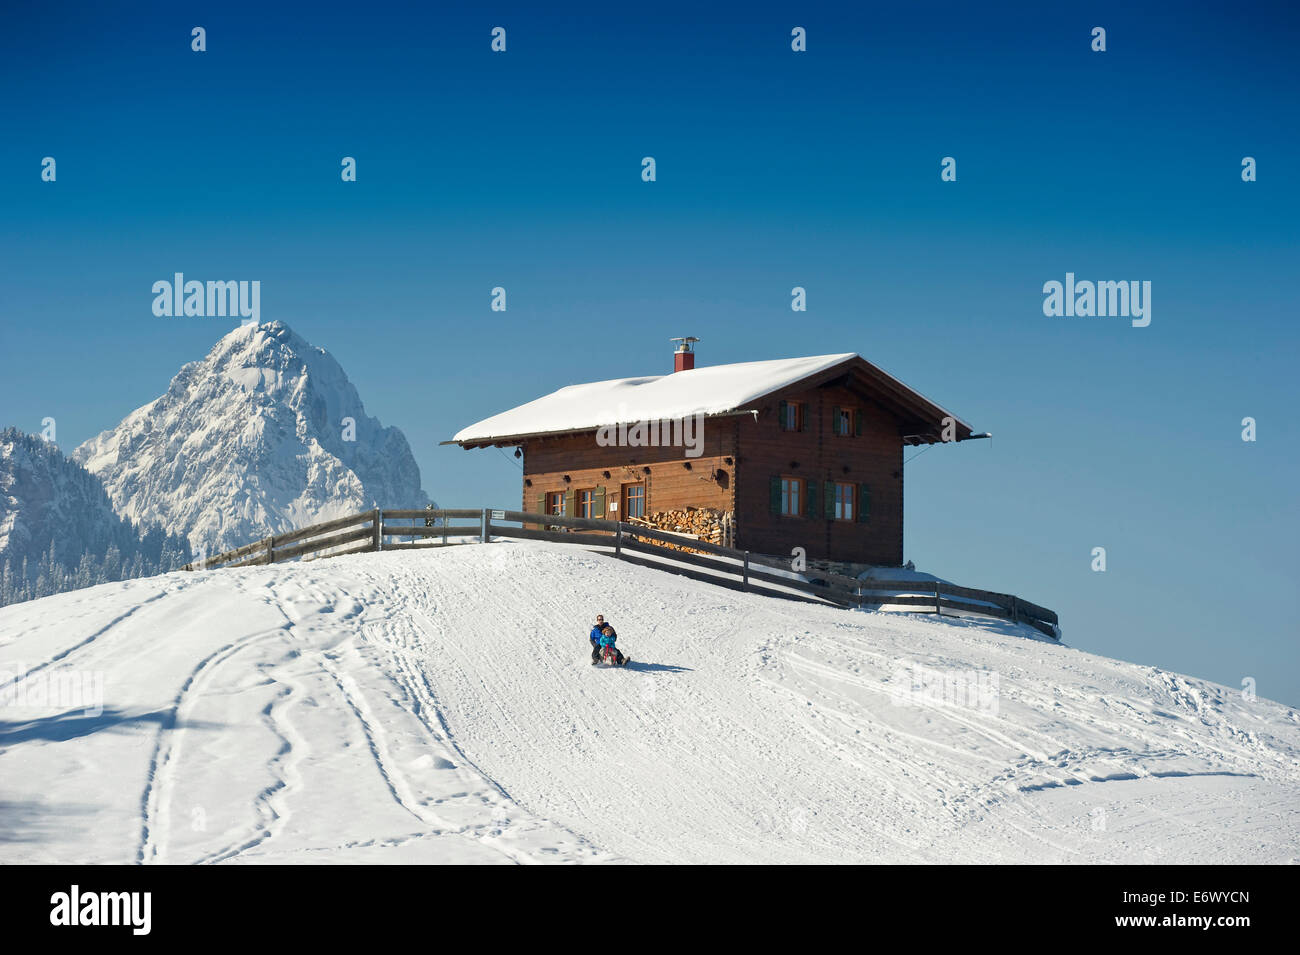 People sledging at Eckbauer, Alpspitze in the background, Garmisch-Partenkirchen, Bavaria, Germany Stock Photo